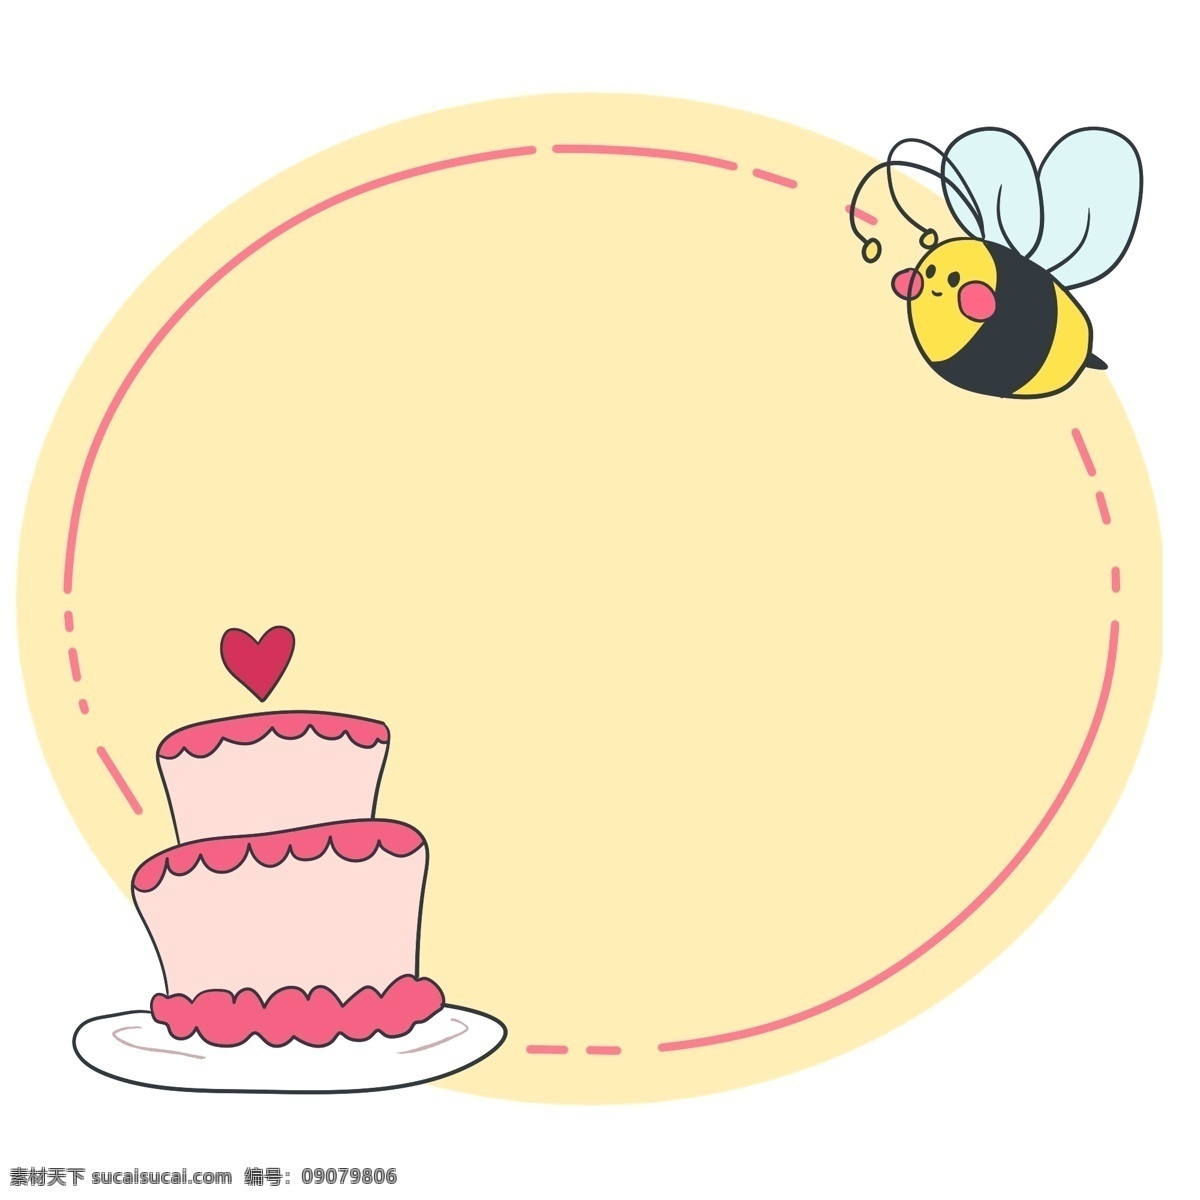 小 蜜蜂 蛋糕 装饰 边框 小蜜蜂边框 黄色边框 粉色蛋糕 蛋糕边框 边框装饰 椭圆形边框 卡通边框 可爱的边框